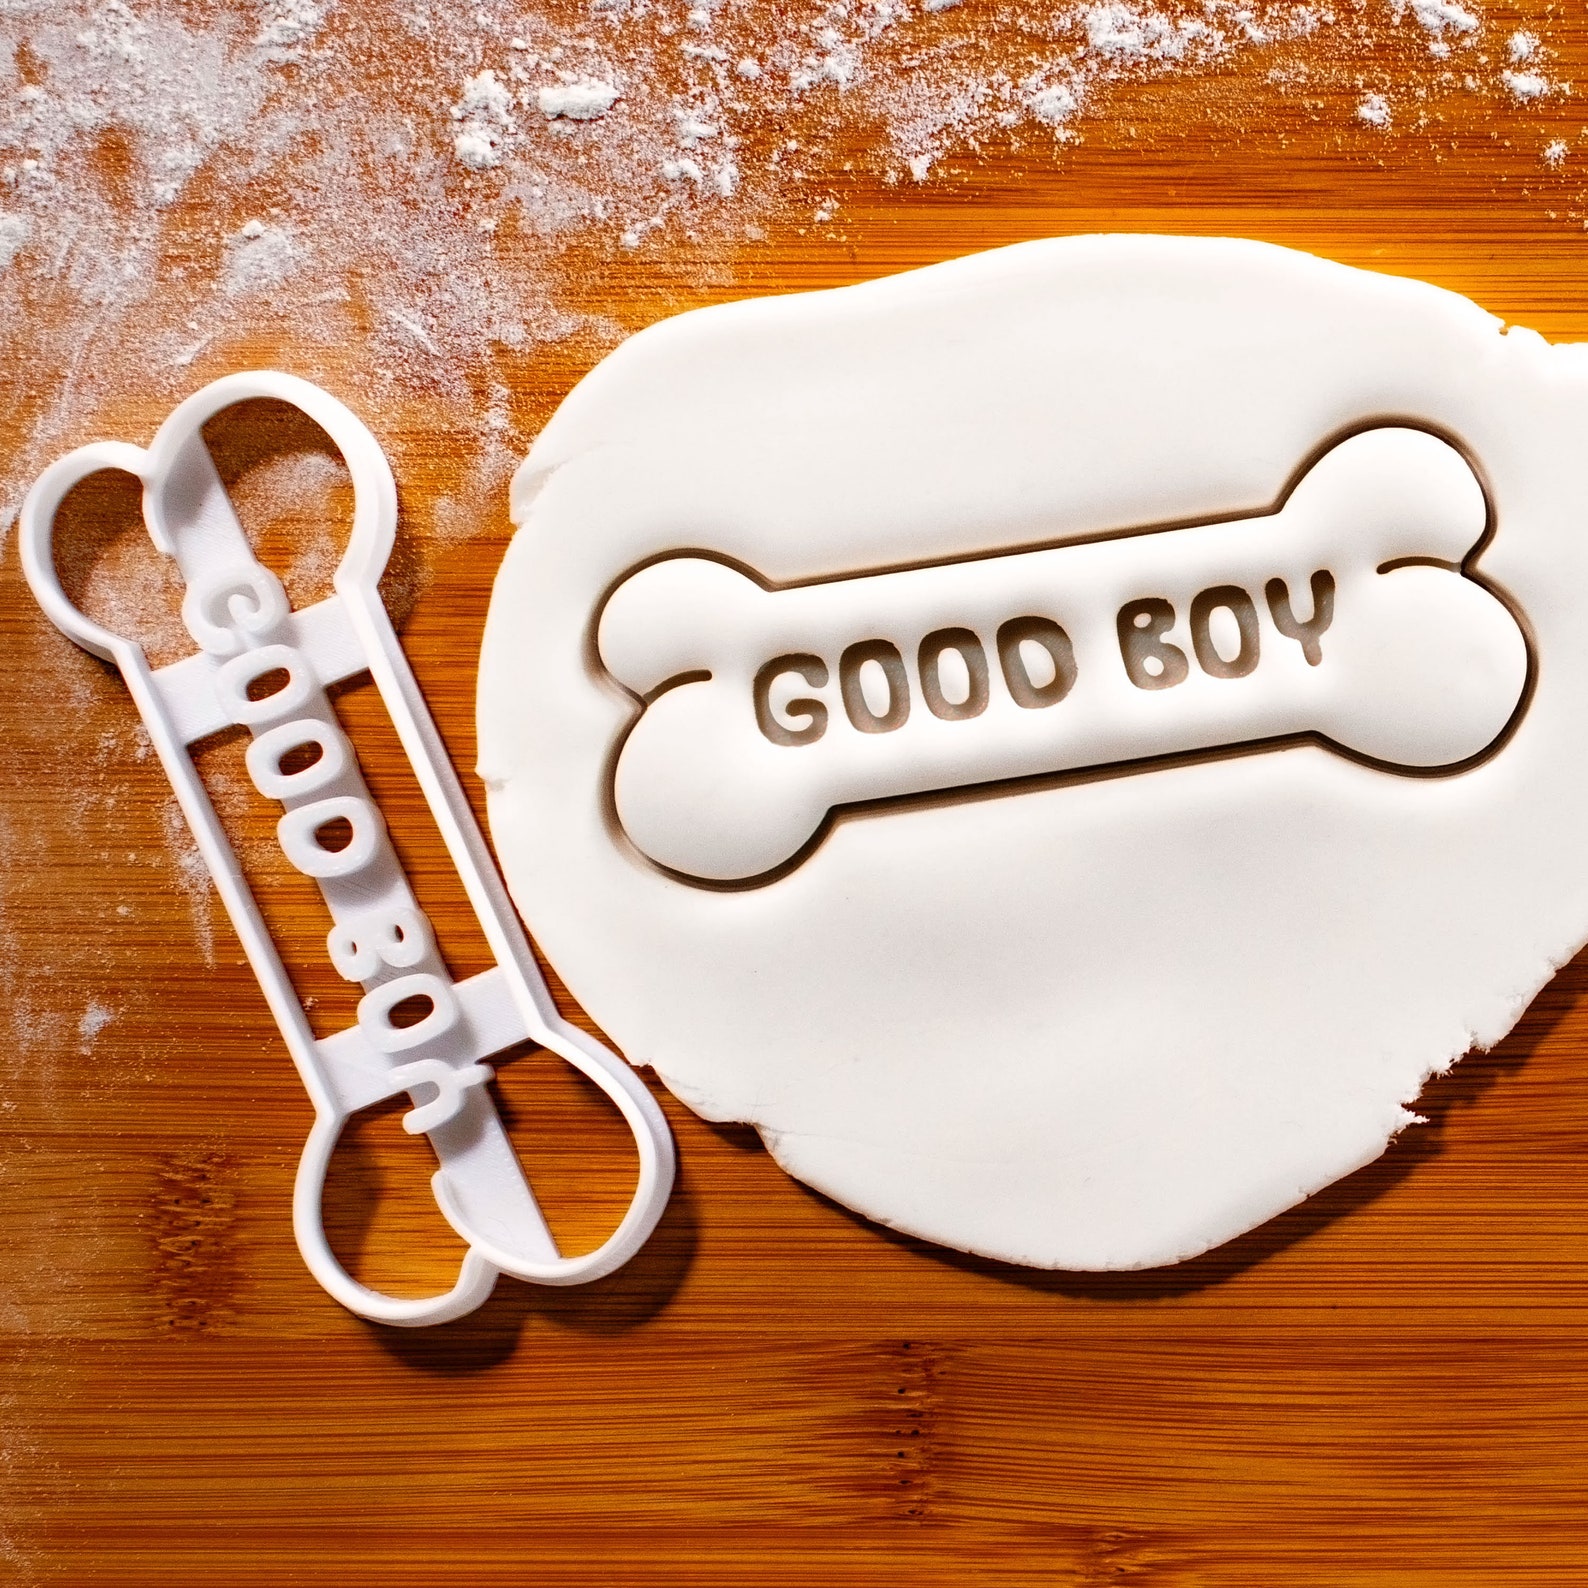 Golden Retriever Face cookie cutter  Bake cute dog treats Face